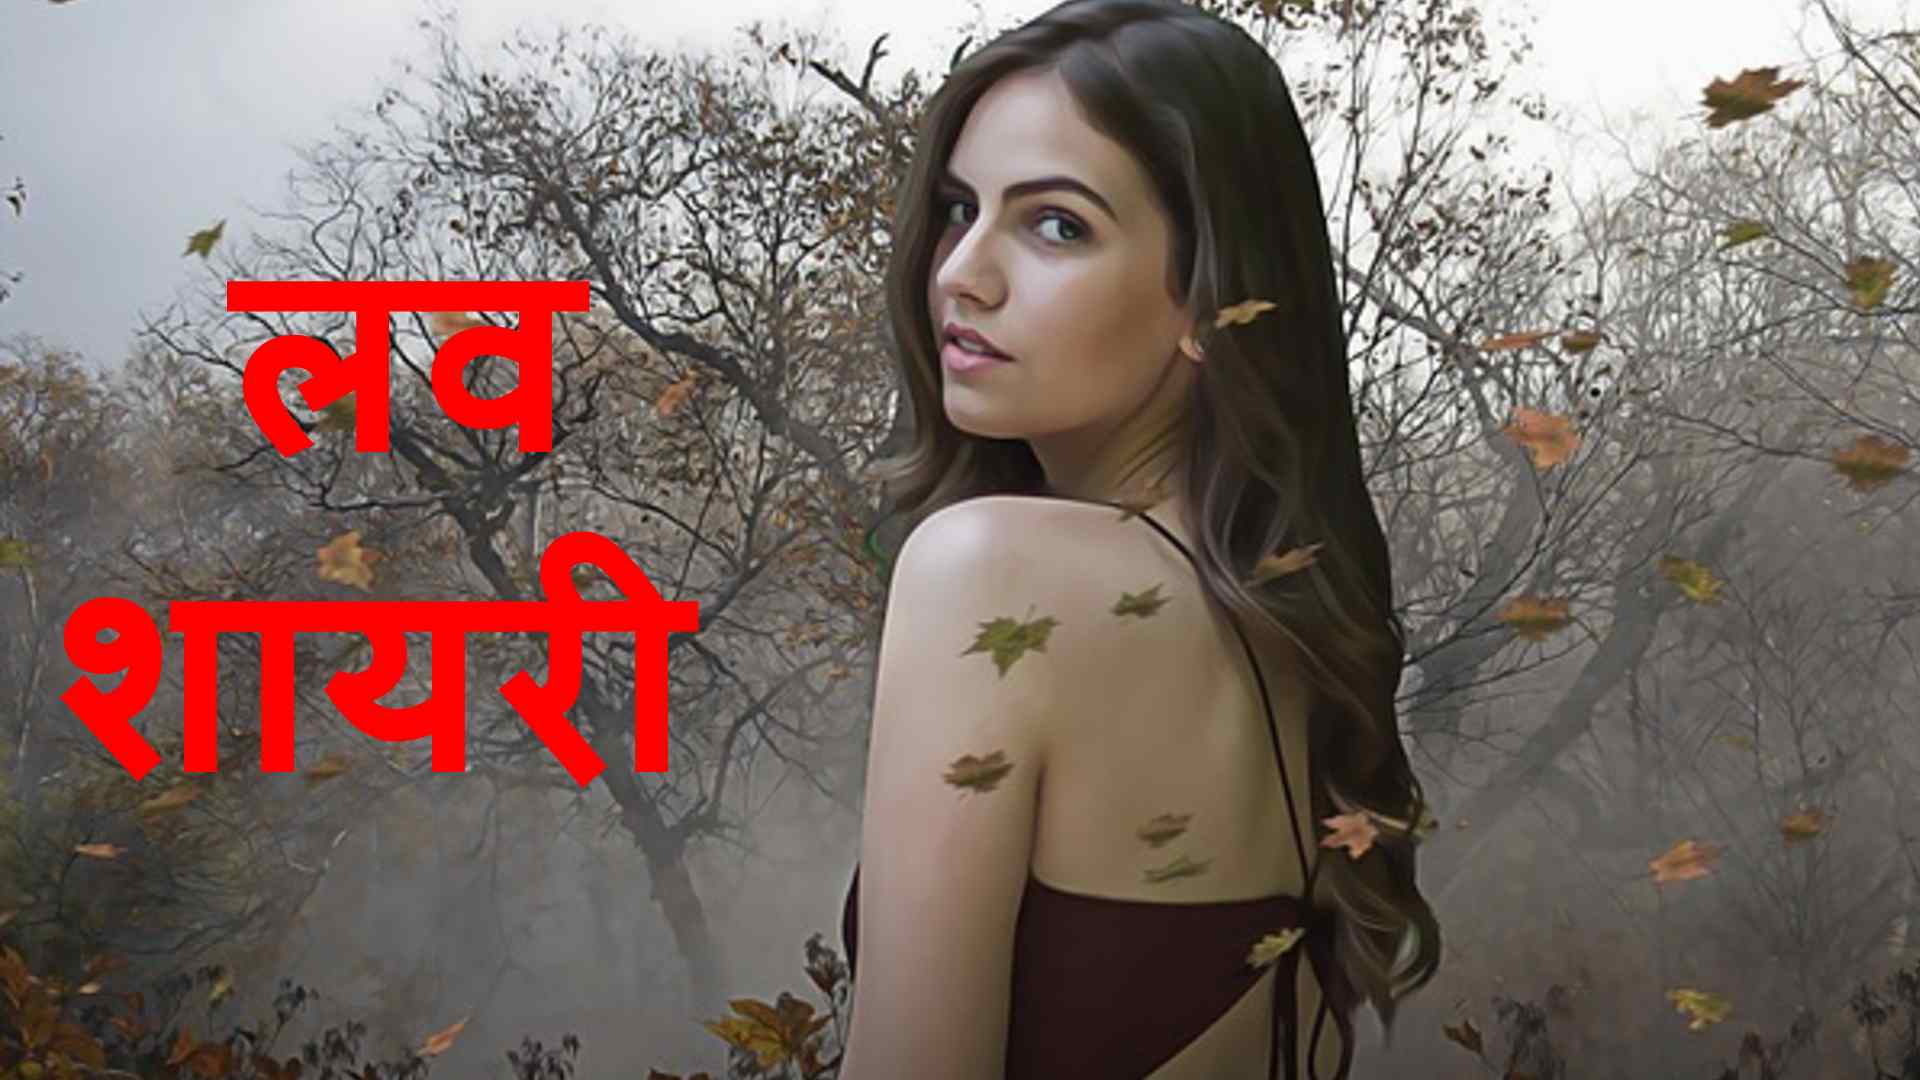 Beautiful Love Shayari in hindi : Superhit लव शायरी हिंदी में | HD Images